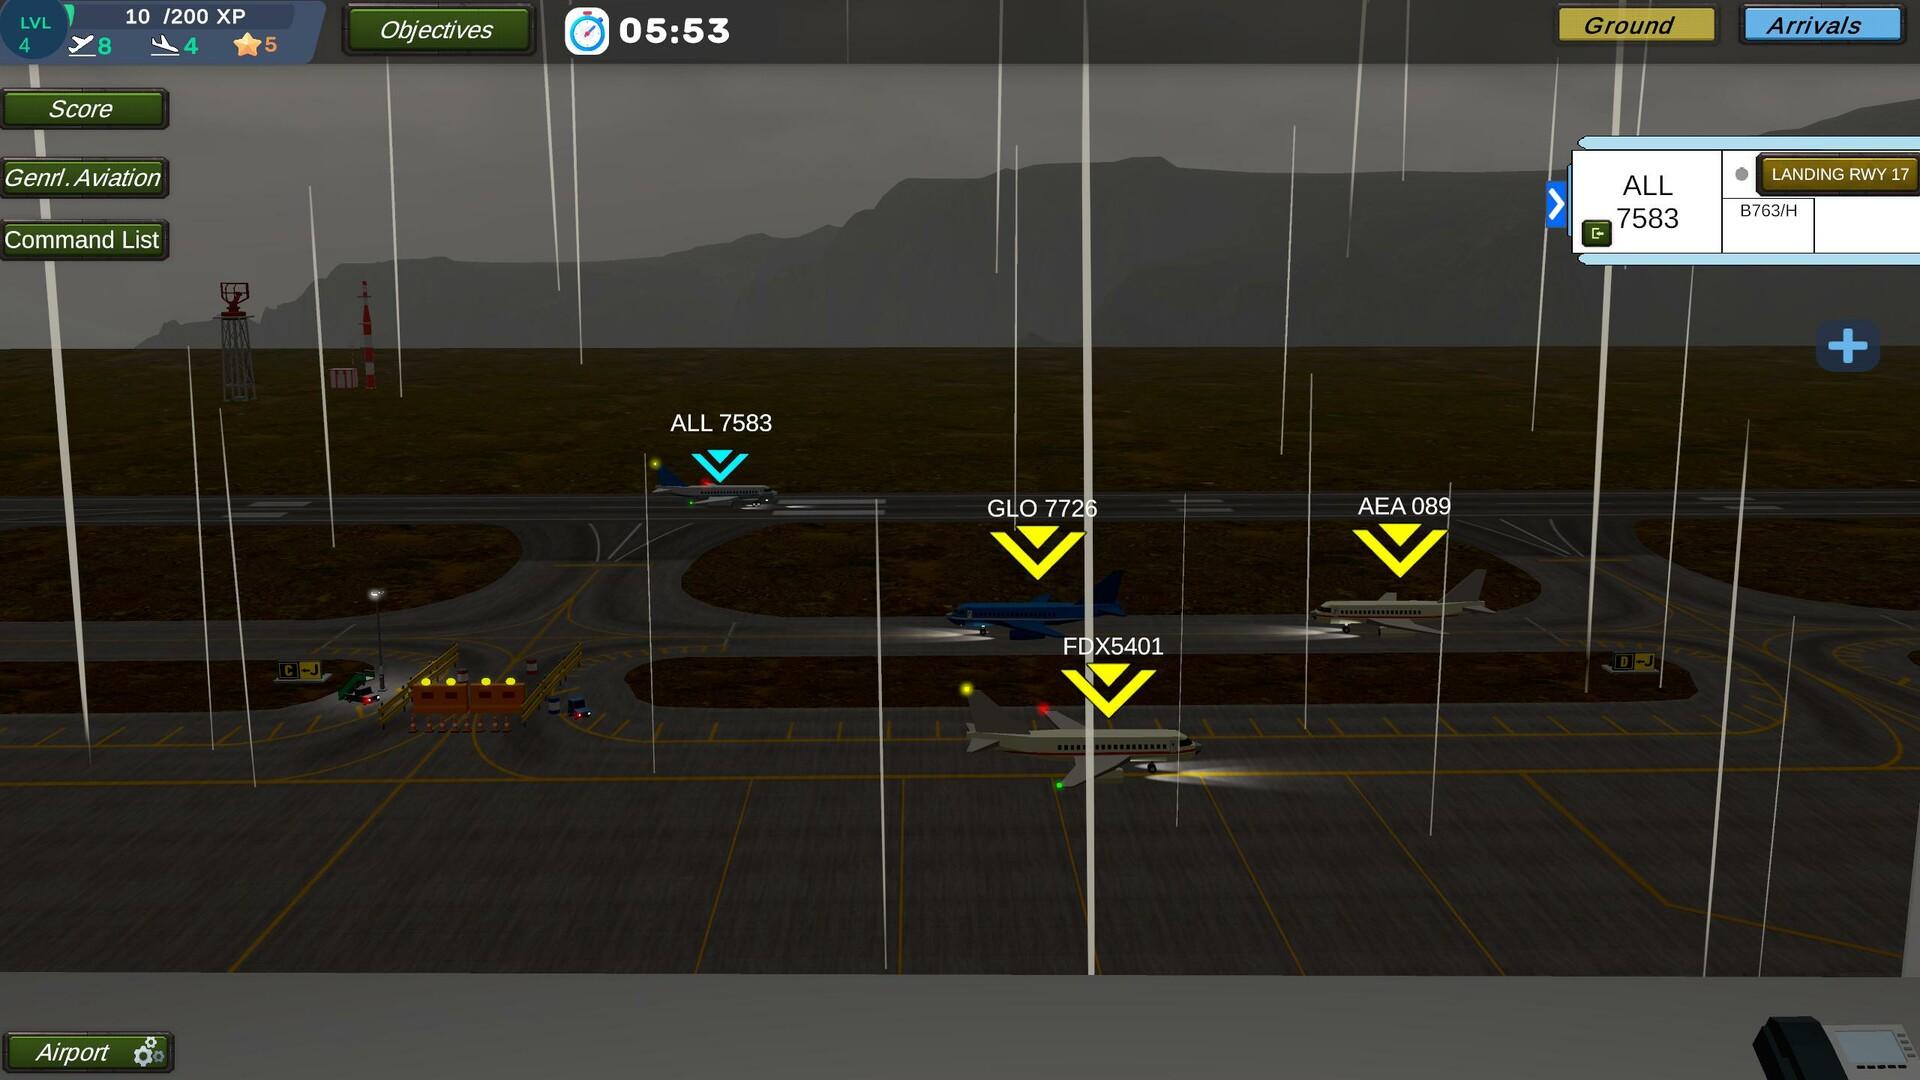 Americas Tower Simulator screenshot game